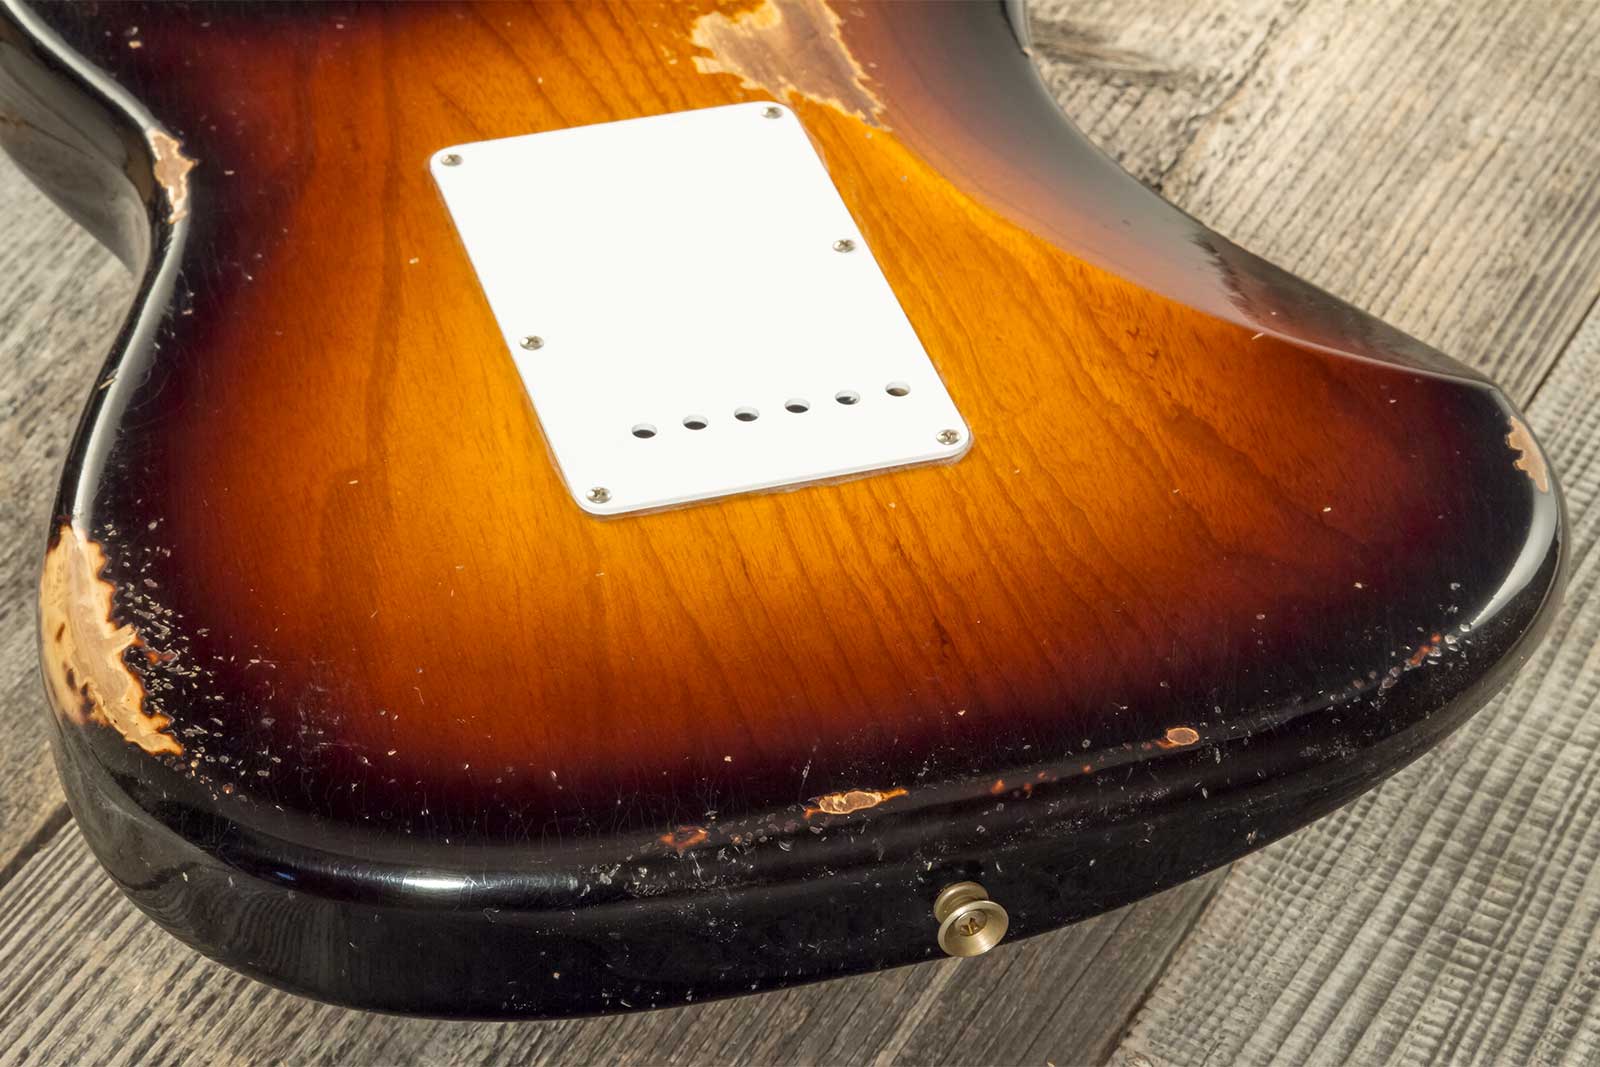 Fender Custom Shop Strat 1954 70th Anniv. 3s Trem Mn #xn4316 - Relic Wide Fade 2-color Sunburst - Str shape electric guitar - Variation 7